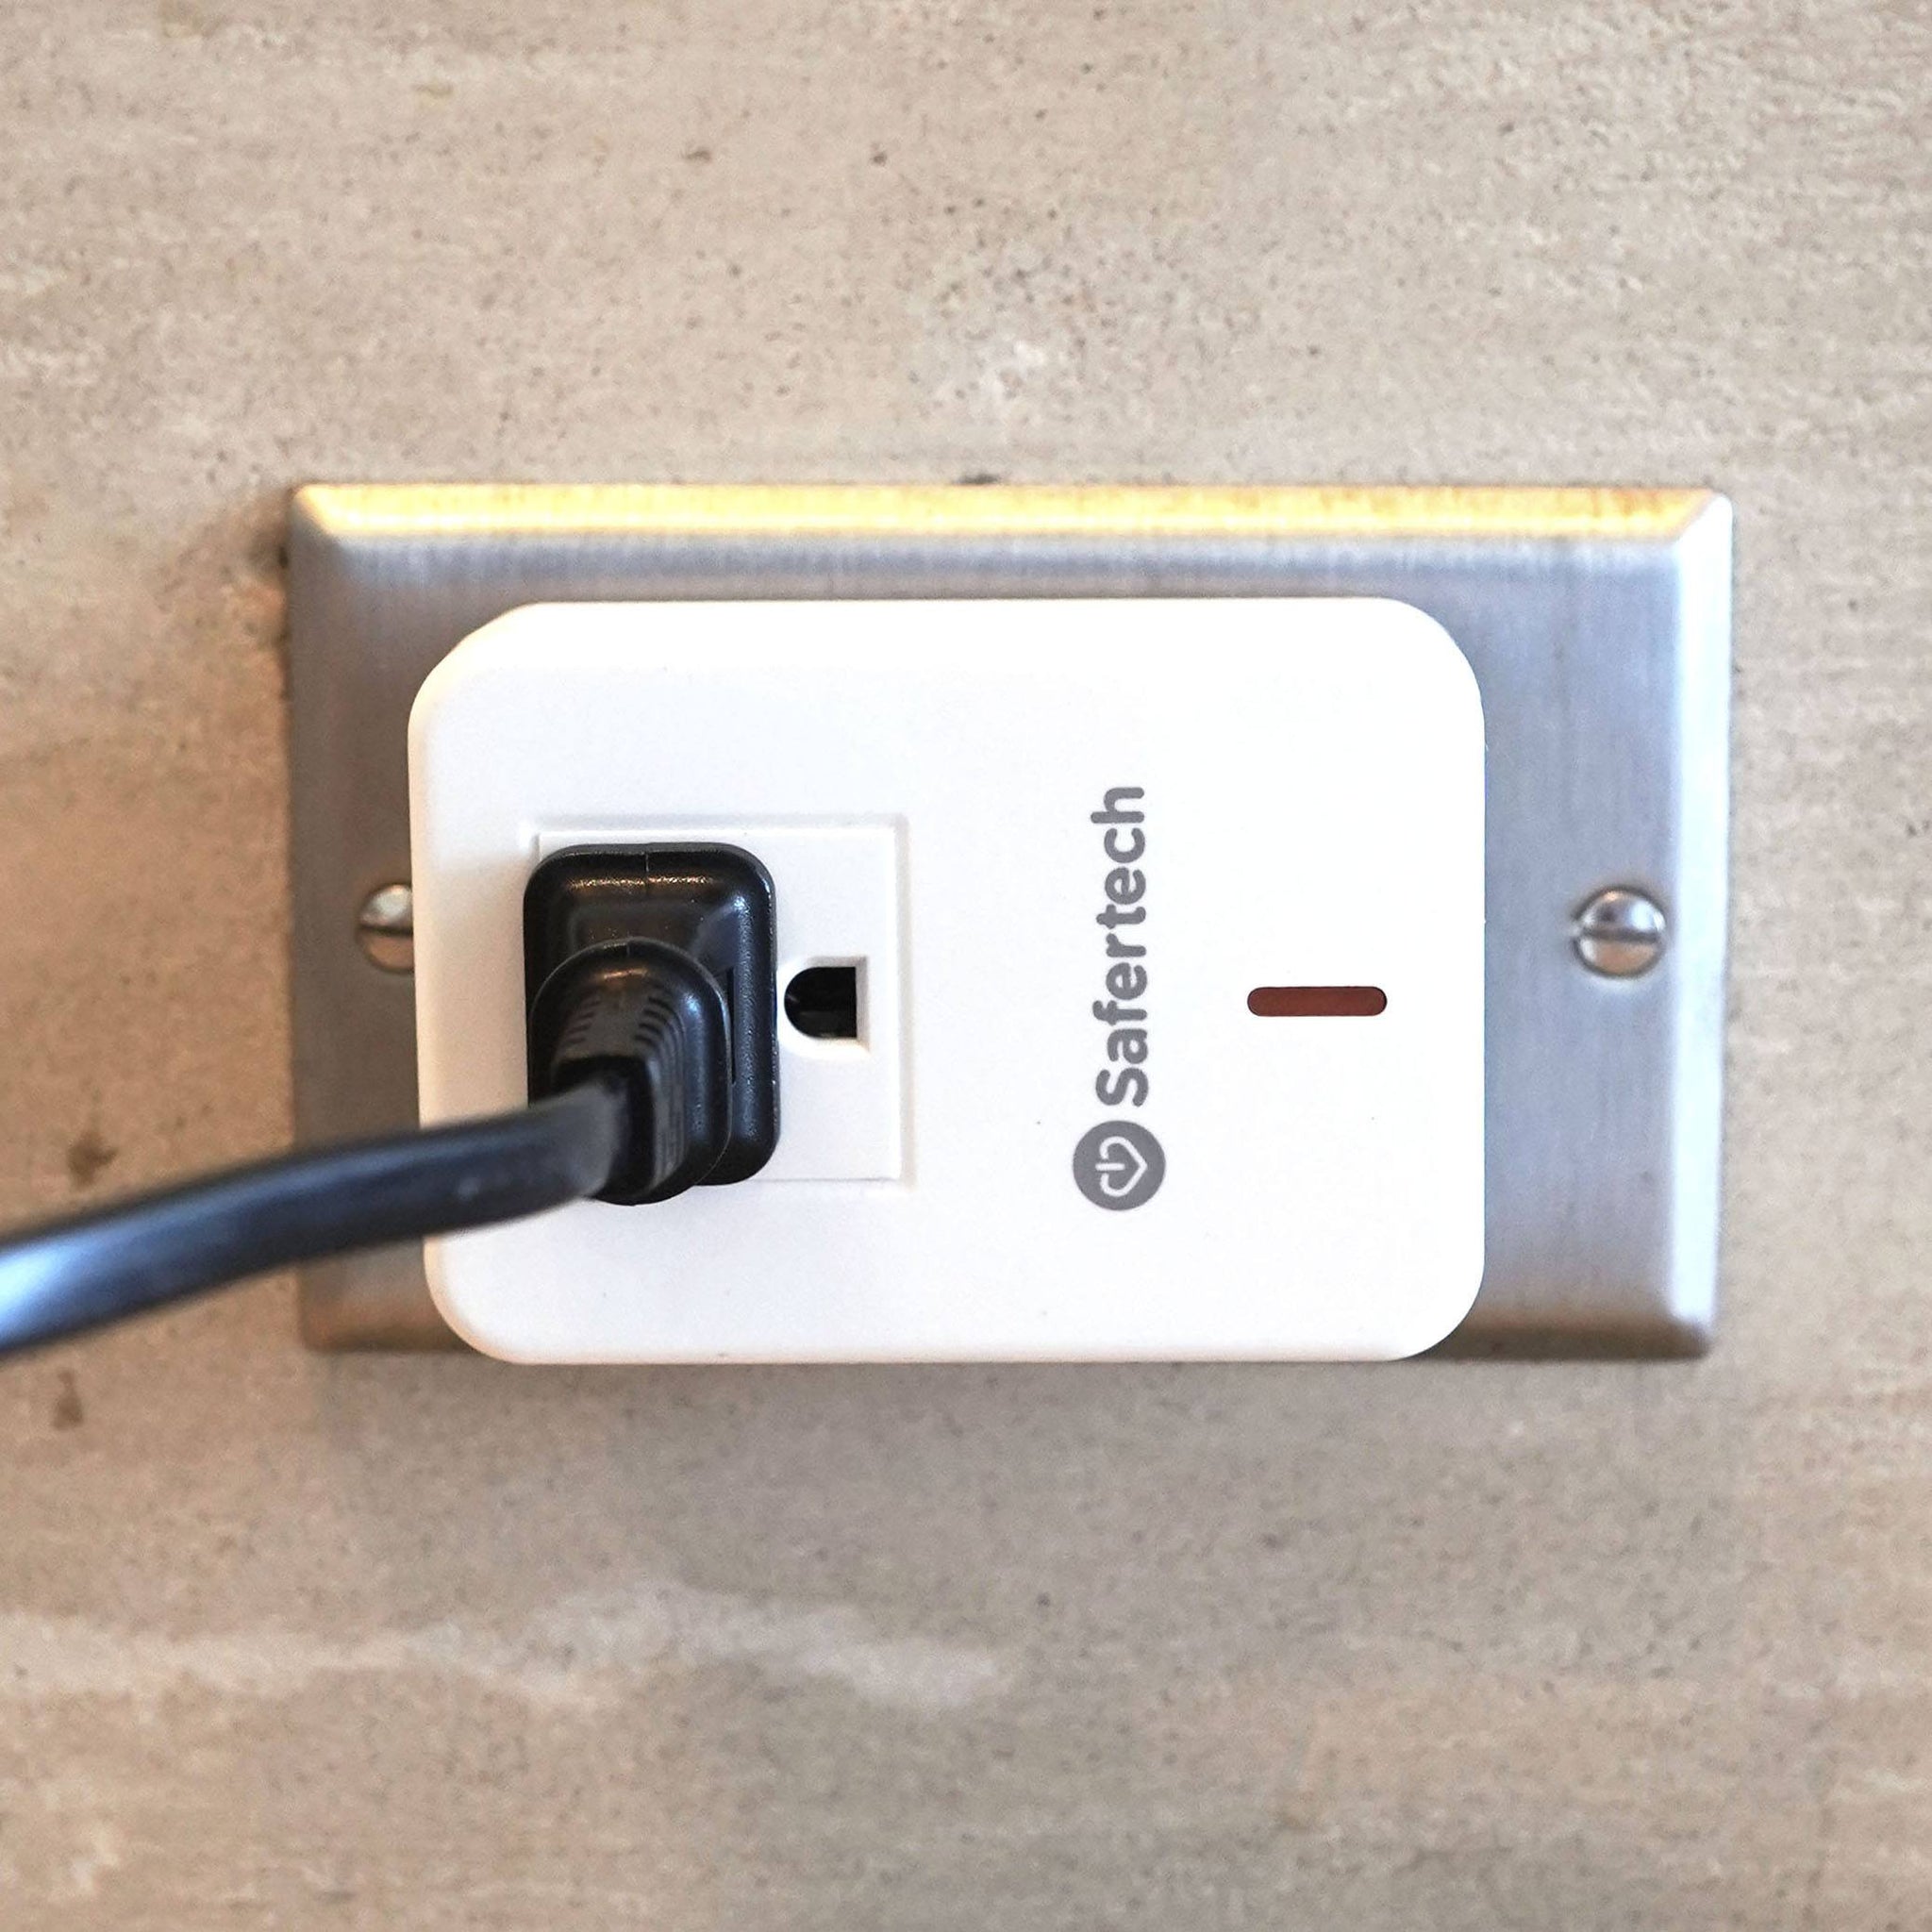 Power Outlet Socket, Remote Control Electrical Outlet US Plug 120V